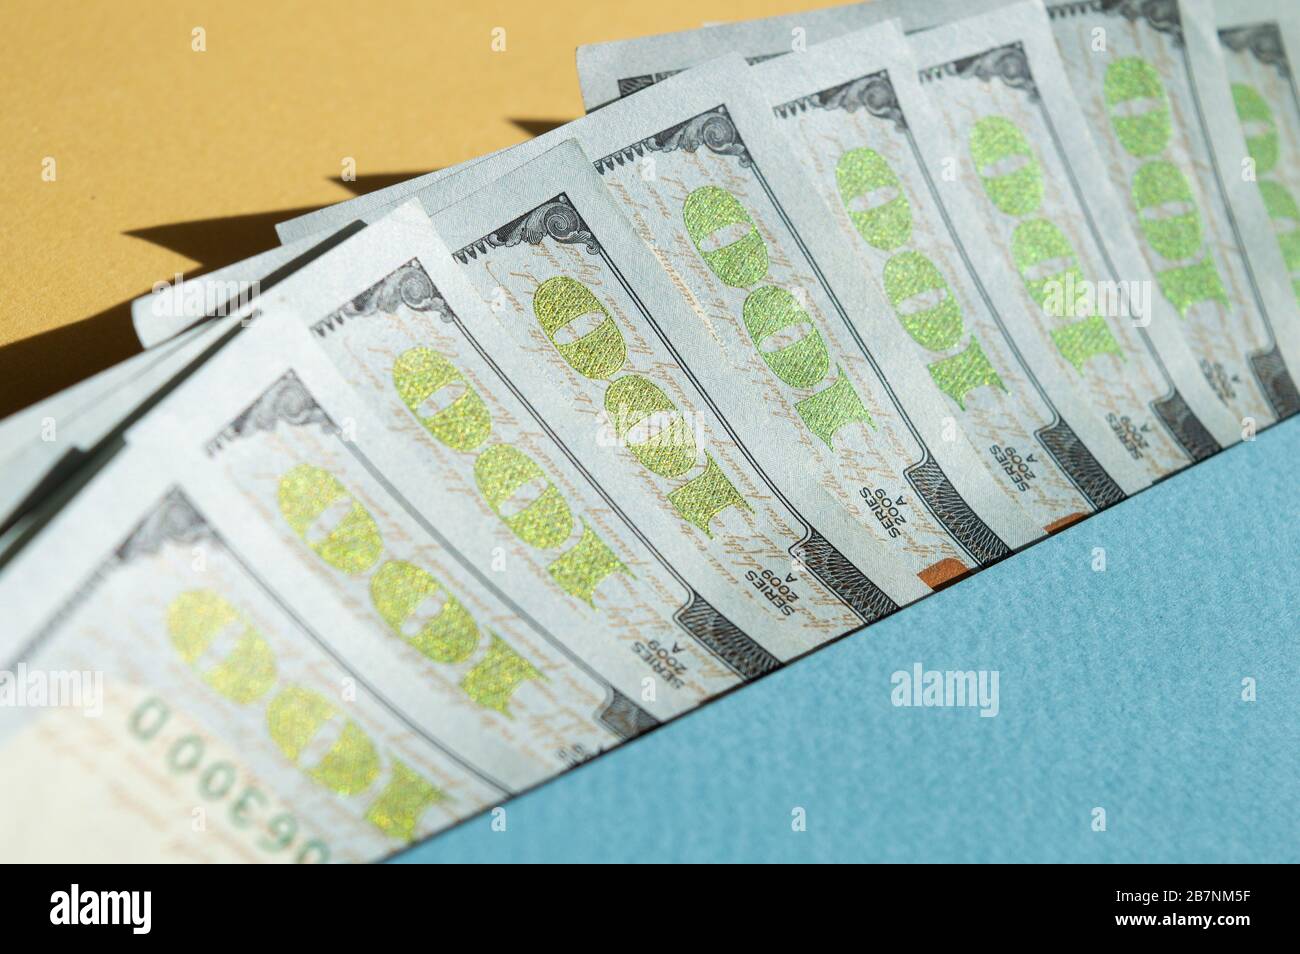 Neuf factures de 100 dollars sur fond jaune et bleu. Photo conceptuelle, conception minimaliste de la monnaie Banque D'Images